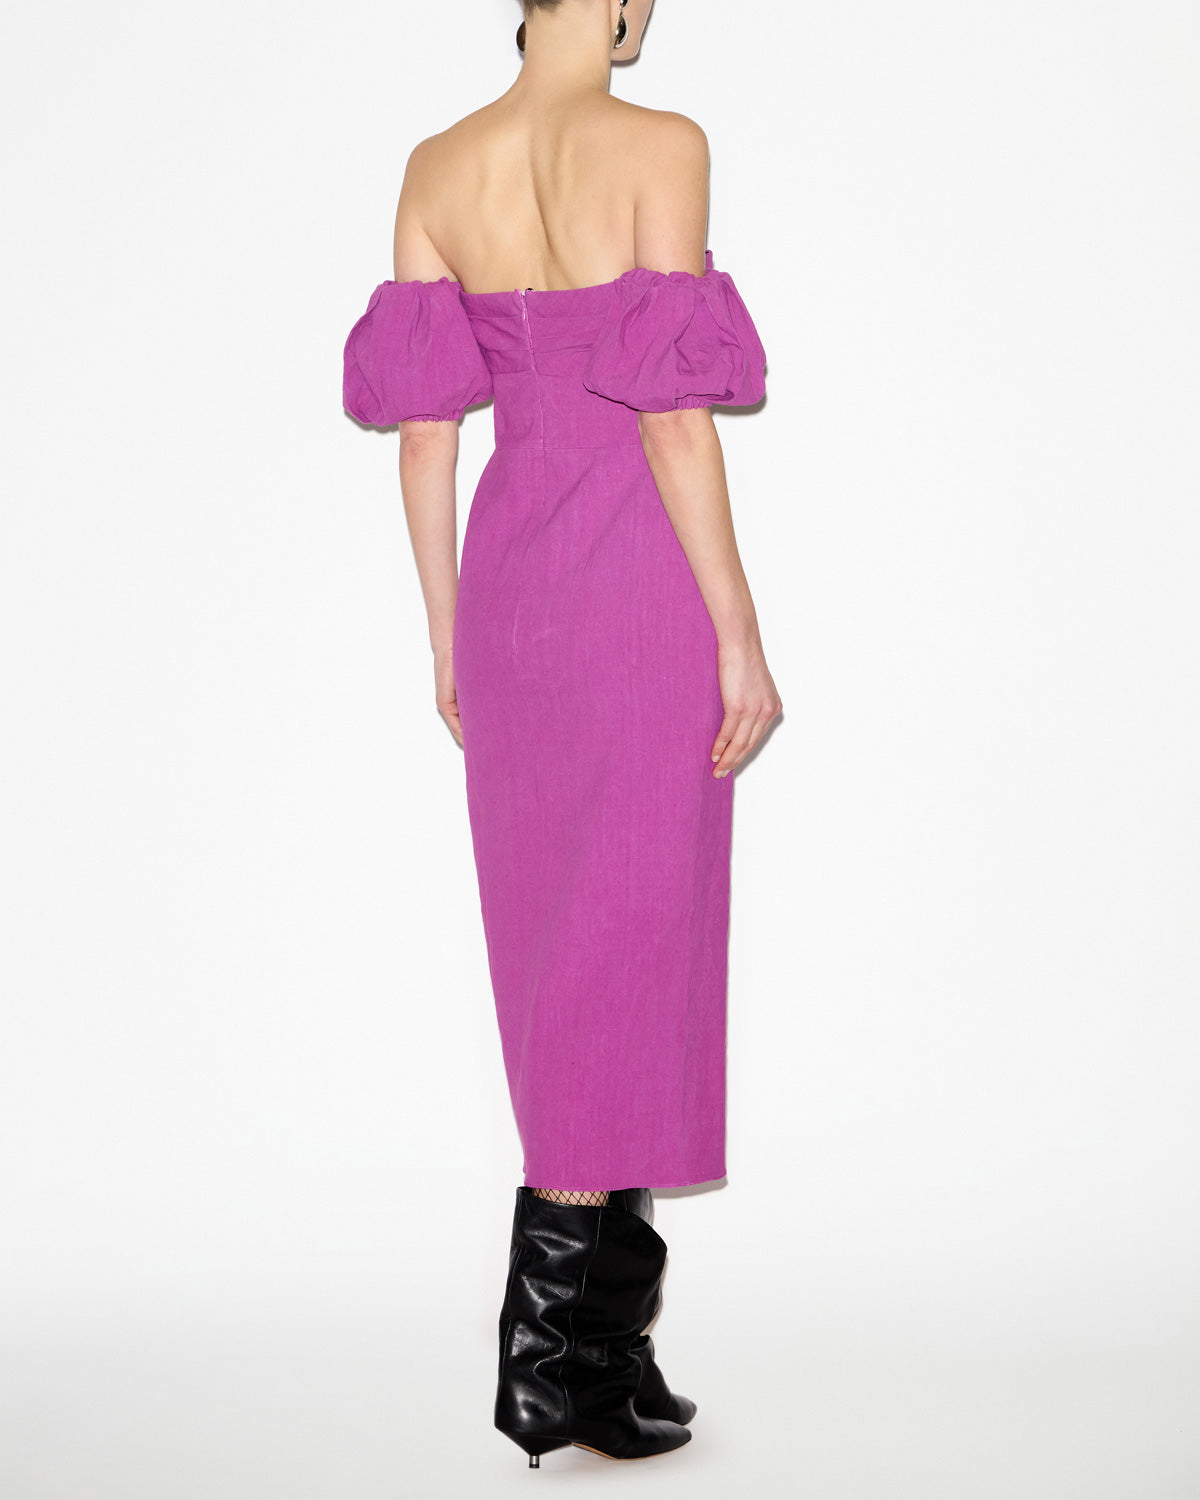 Darlena dress Woman Purple 4